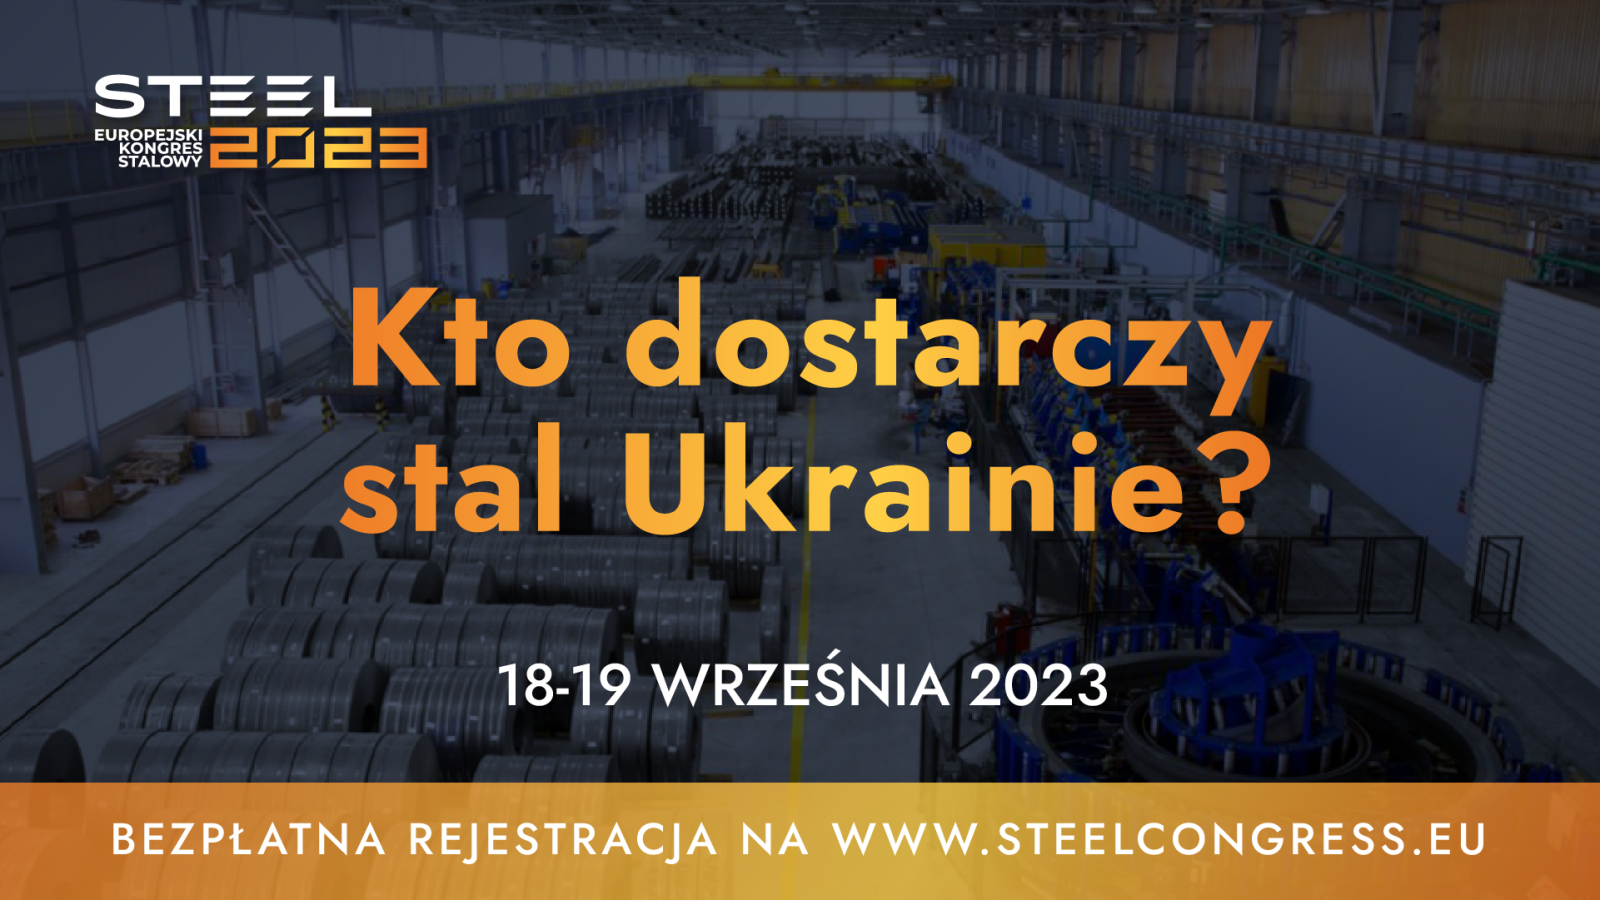 Kto dostarczy stal Ukrainie? Odpowiedź  poznamy podczas kongresu STEEL 2023